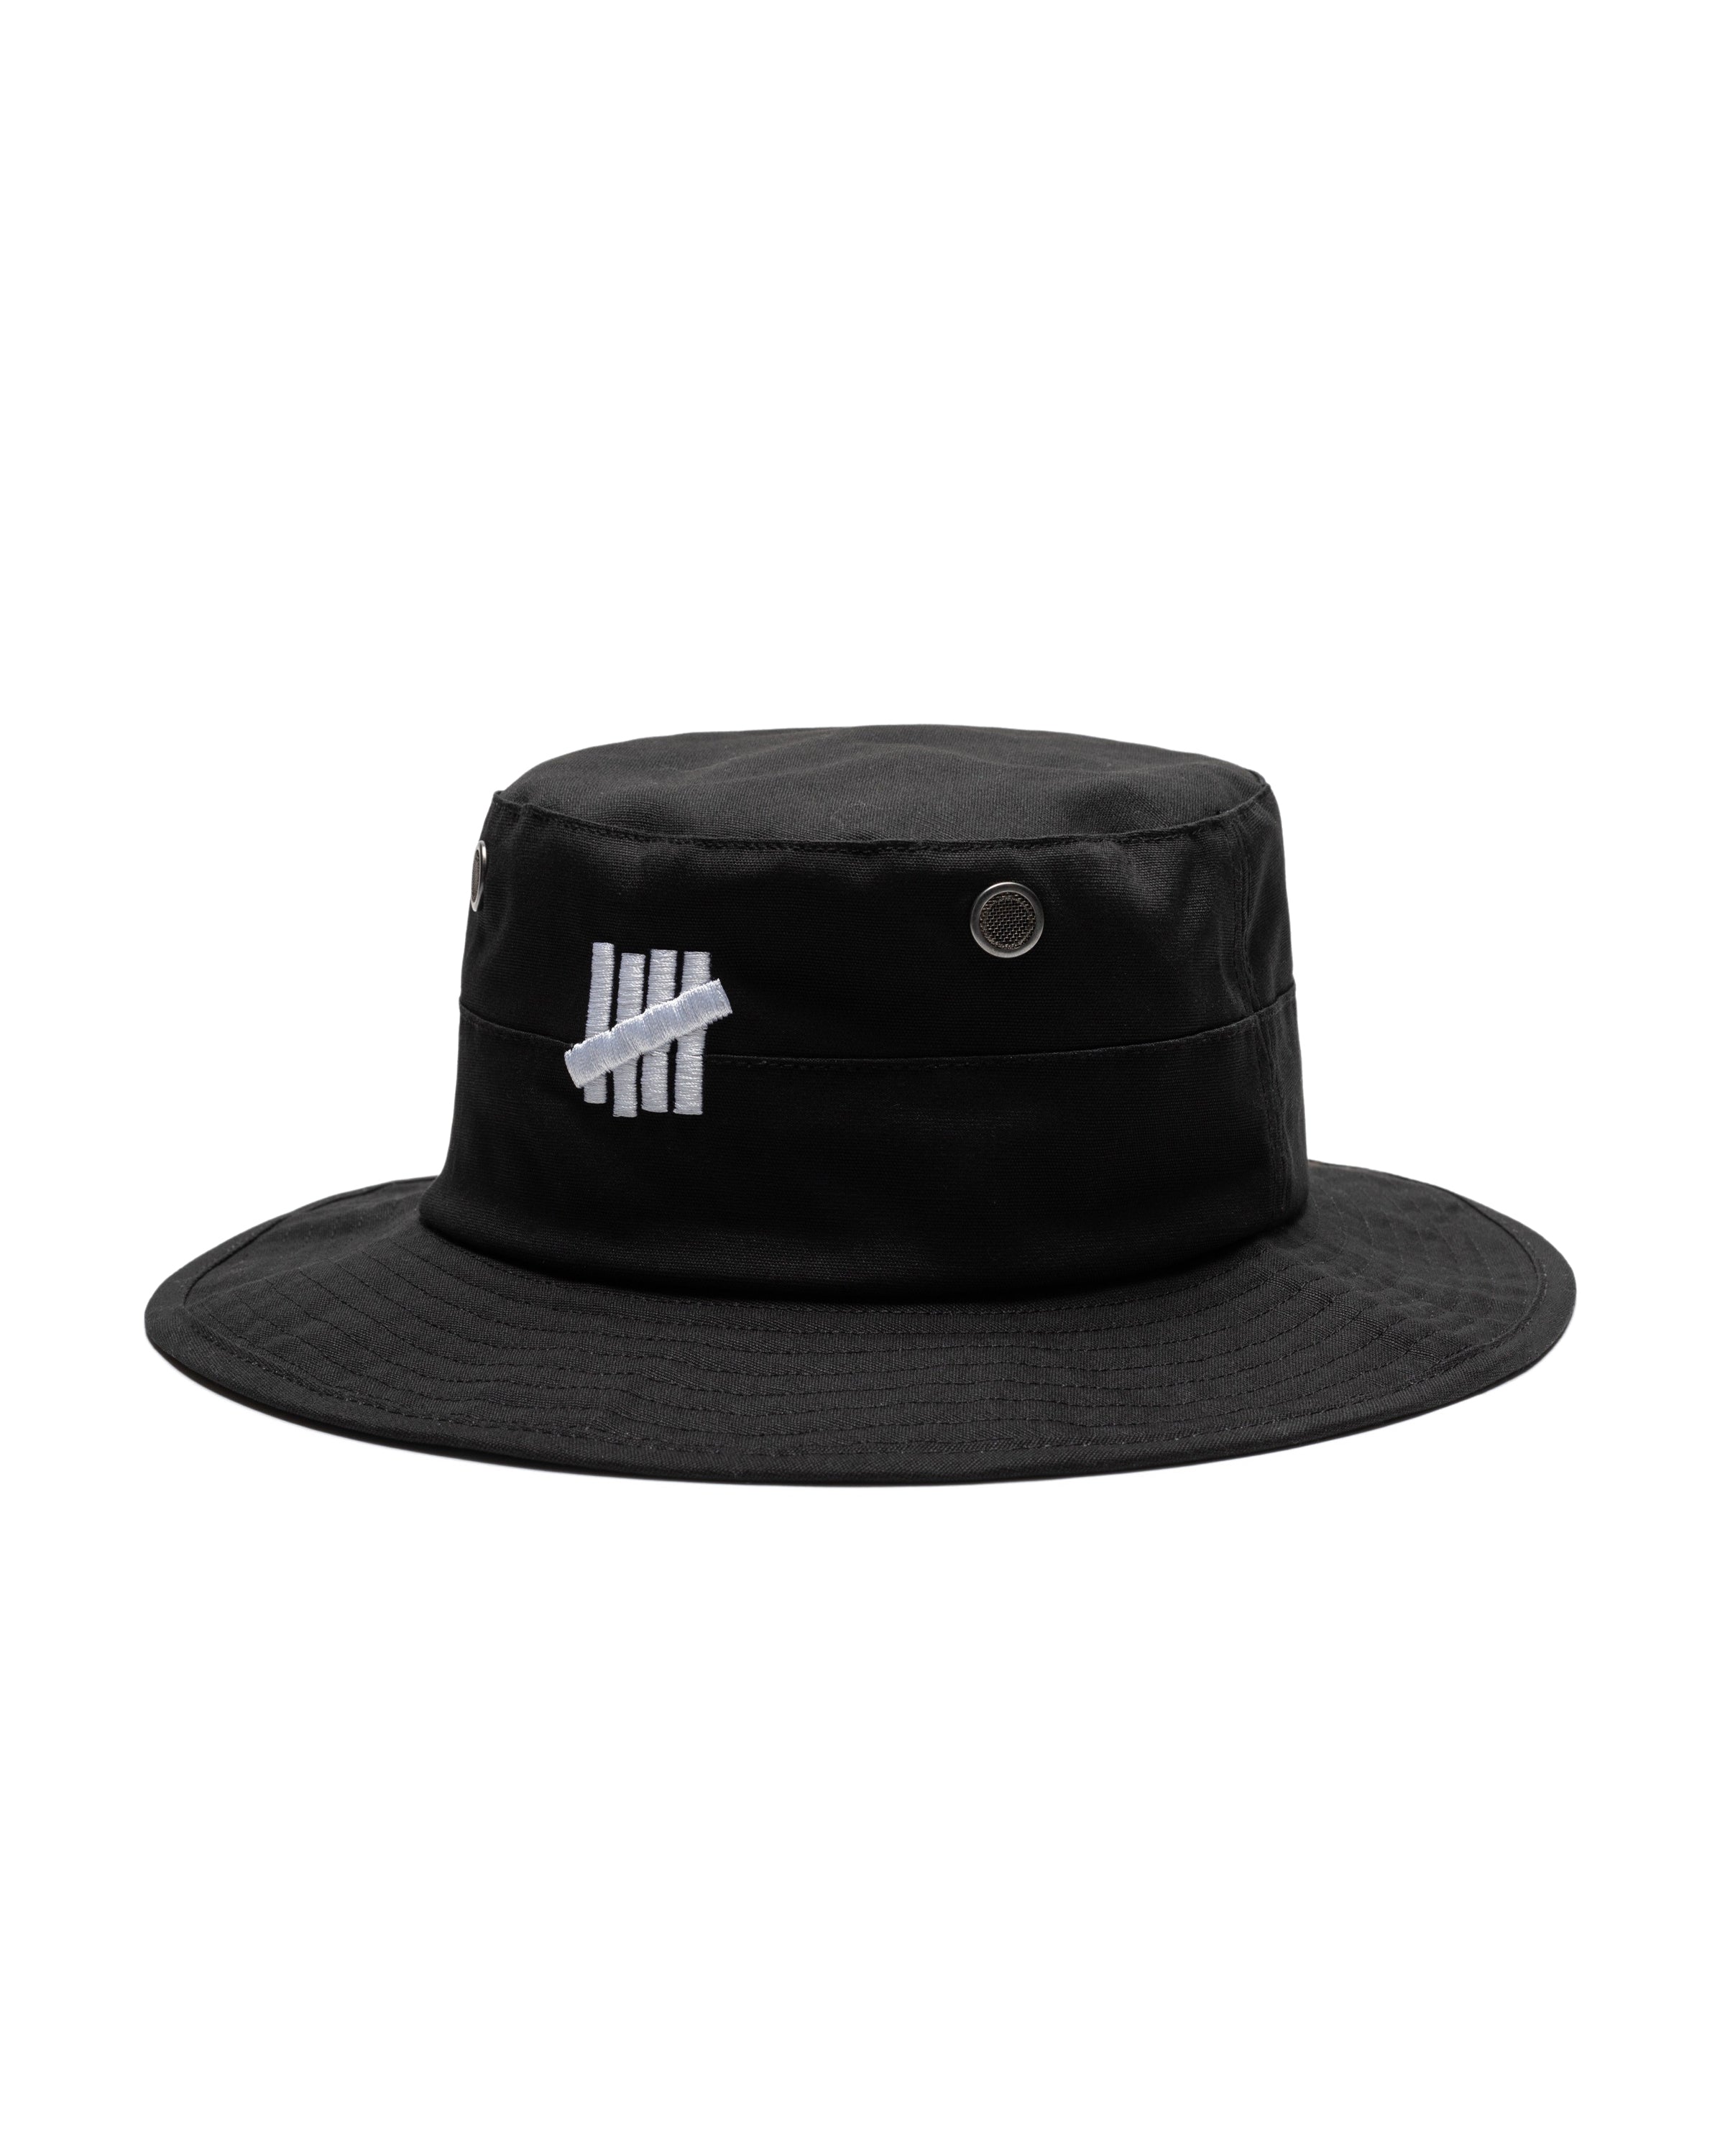 UNDFEATED バケットハット ブラック L XL - 帽子